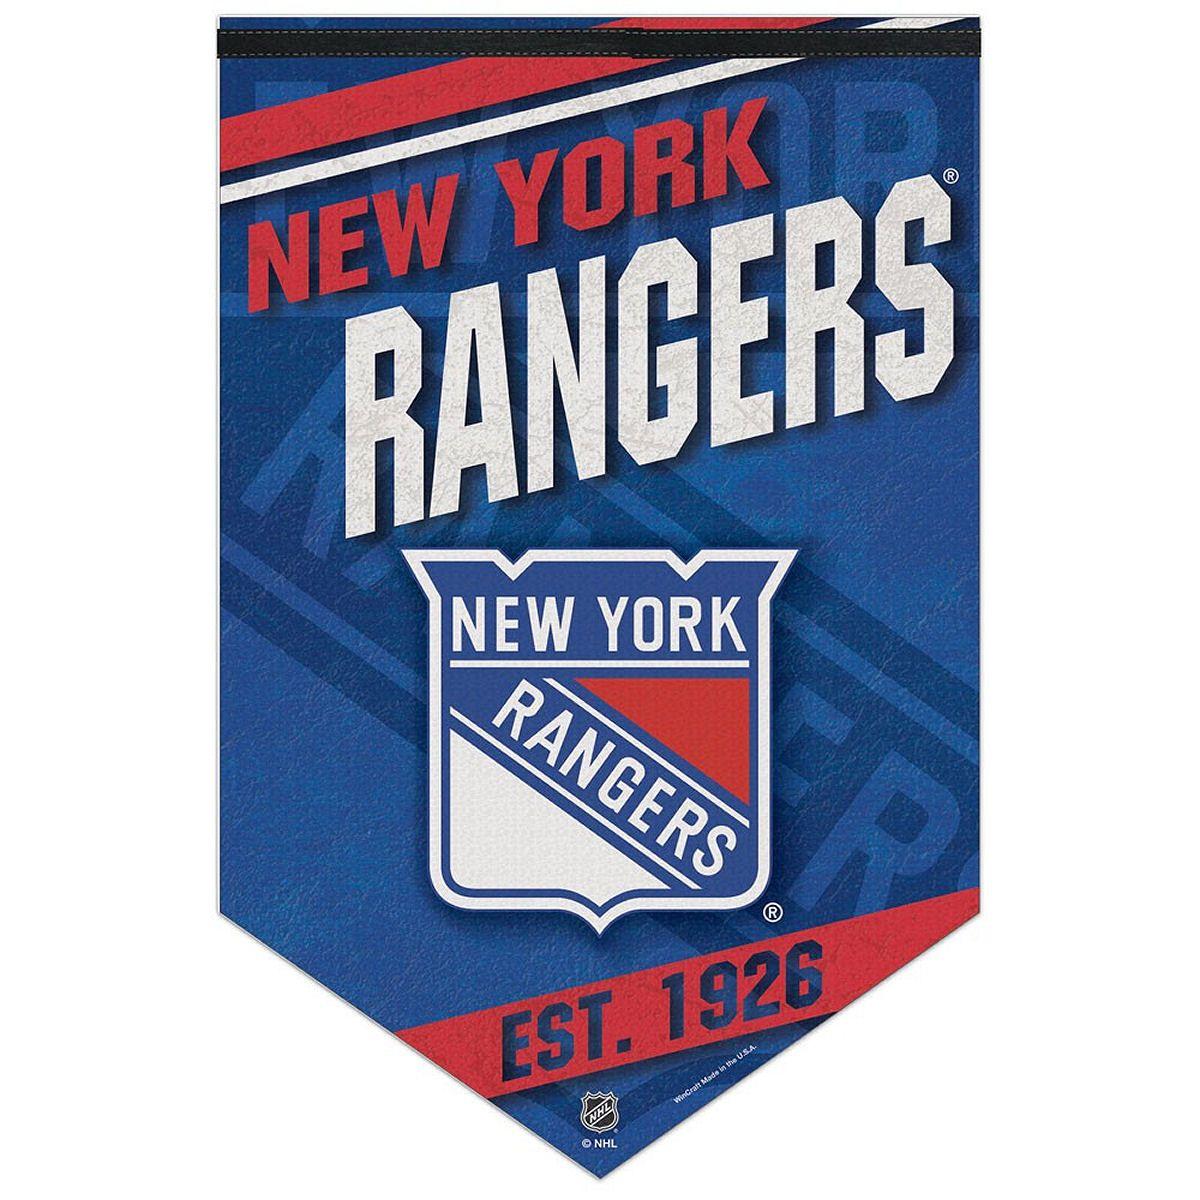 NY Rangers Logo - NY Rangers Logo Banner and Wall Hanging 32085135506 | eBay